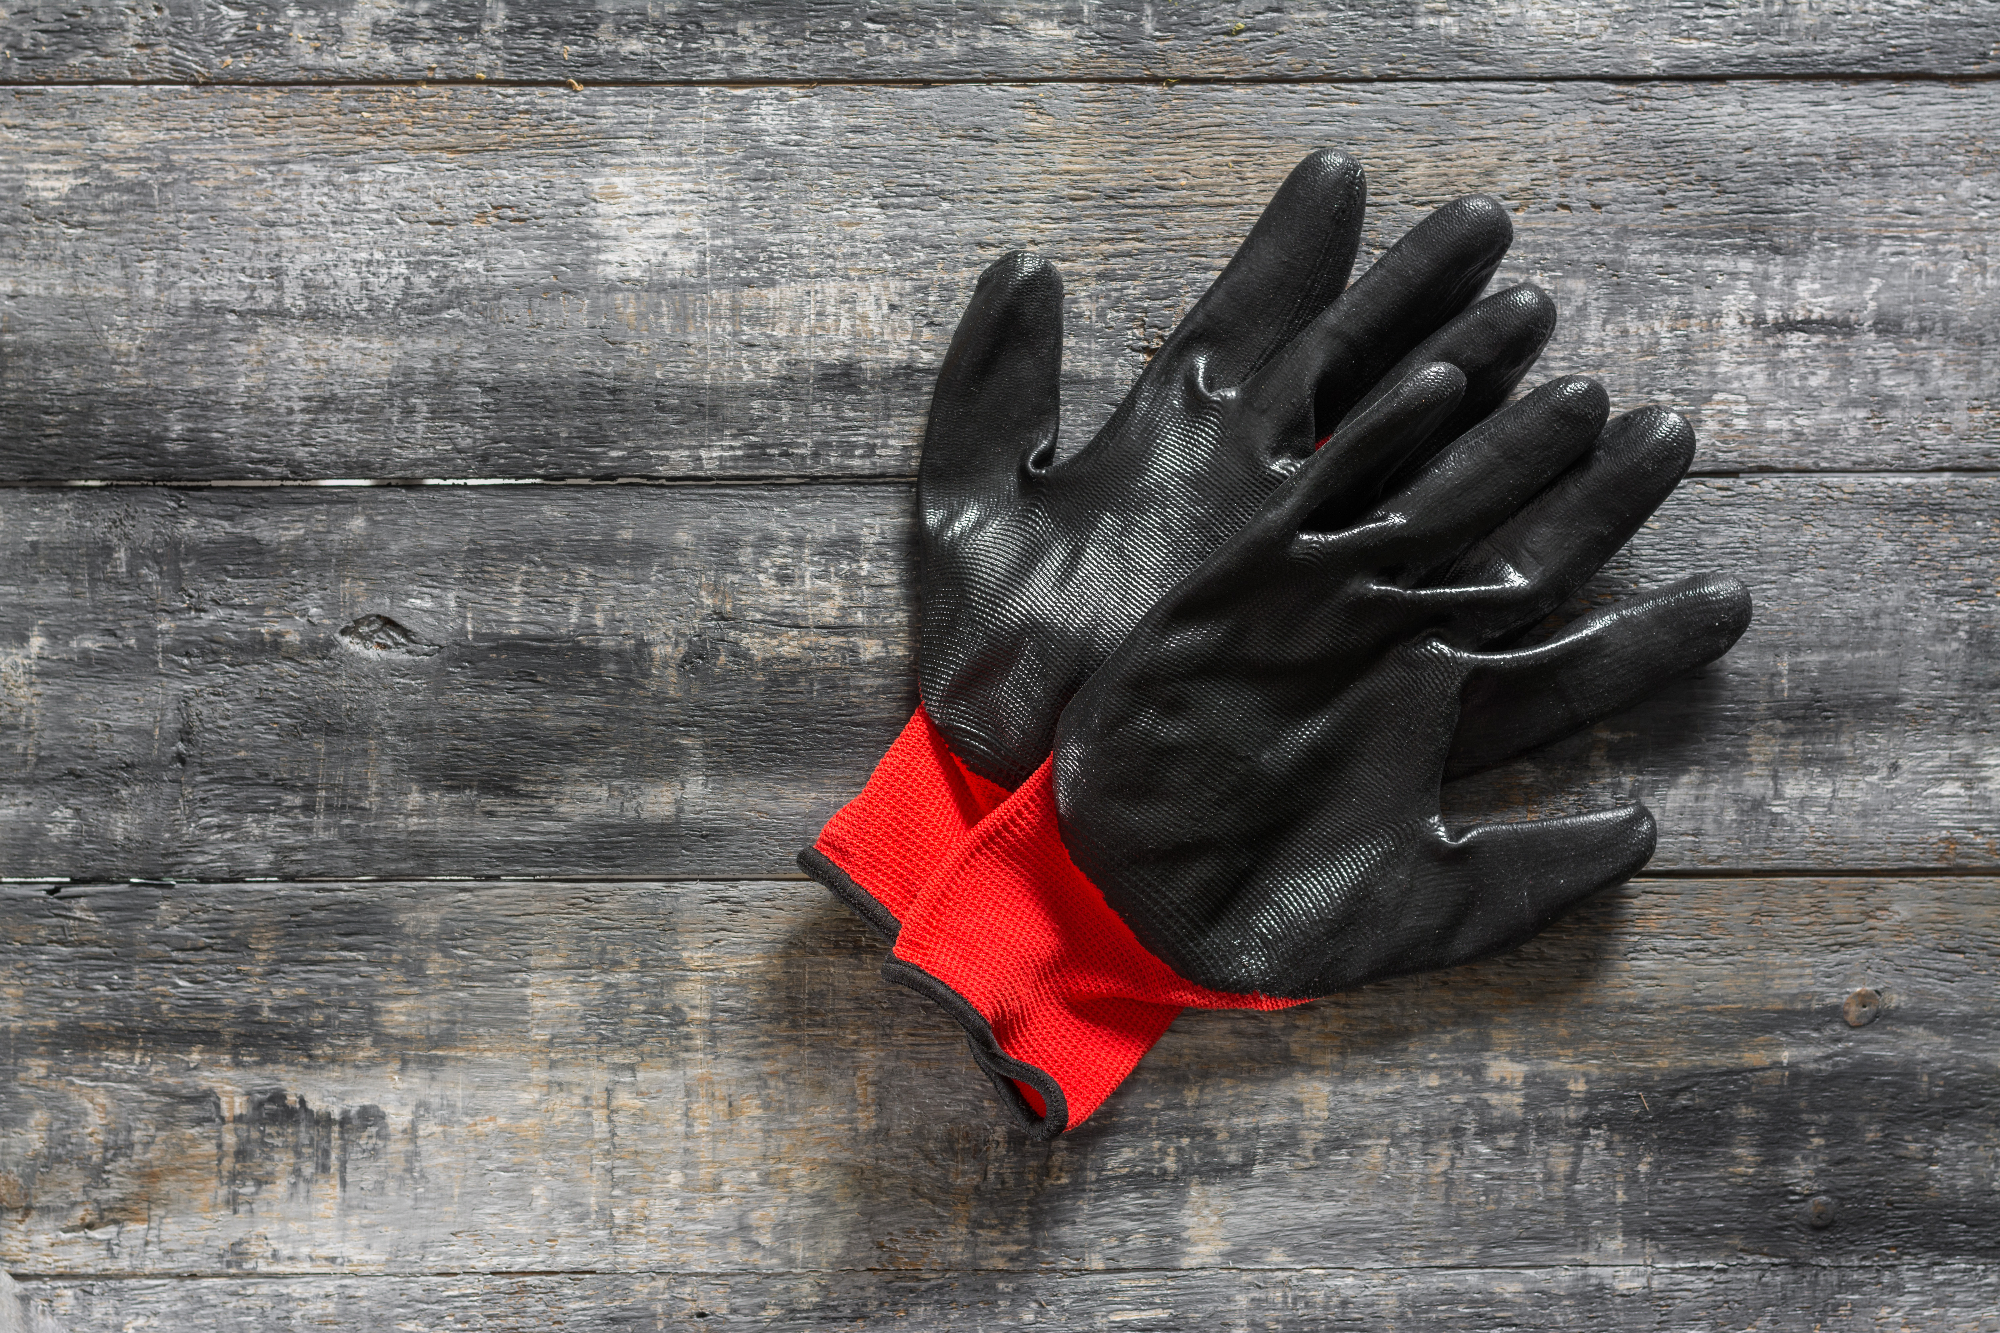 Zaščitne rokavice so nujno potrebne pri določenem delu